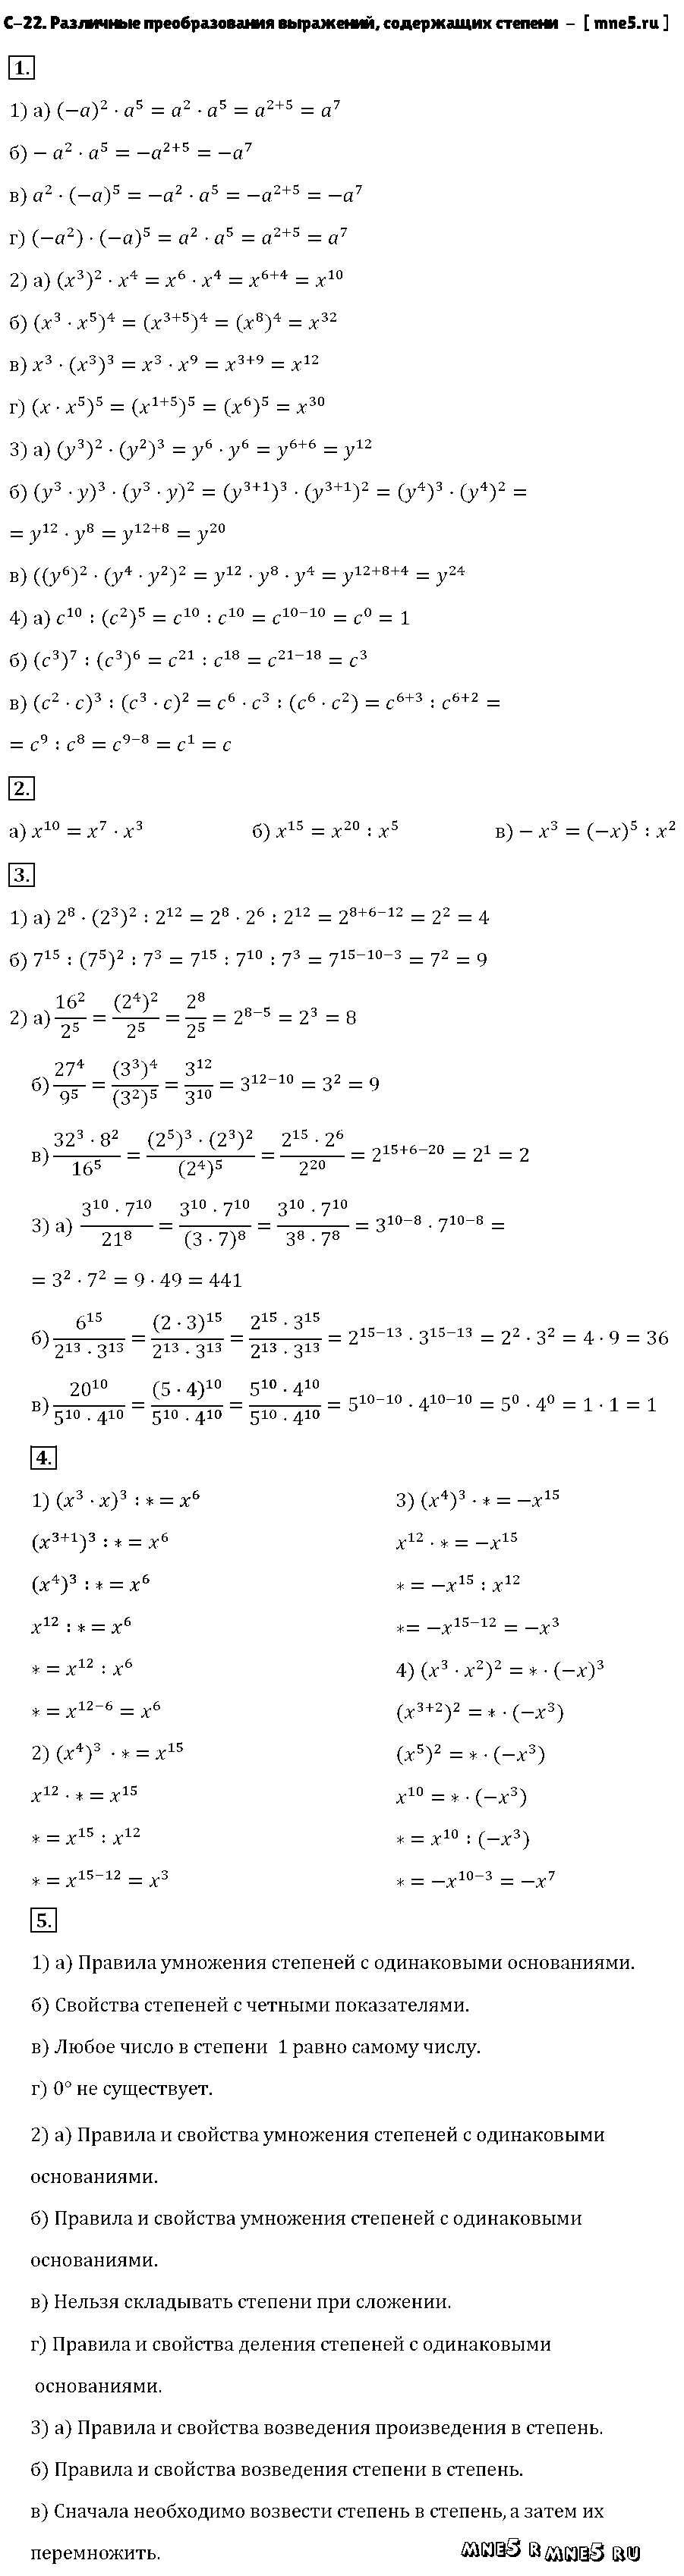 ГДЗ Алгебра 7 класс - С-22. Различные преобразования выражений, содержащих степени